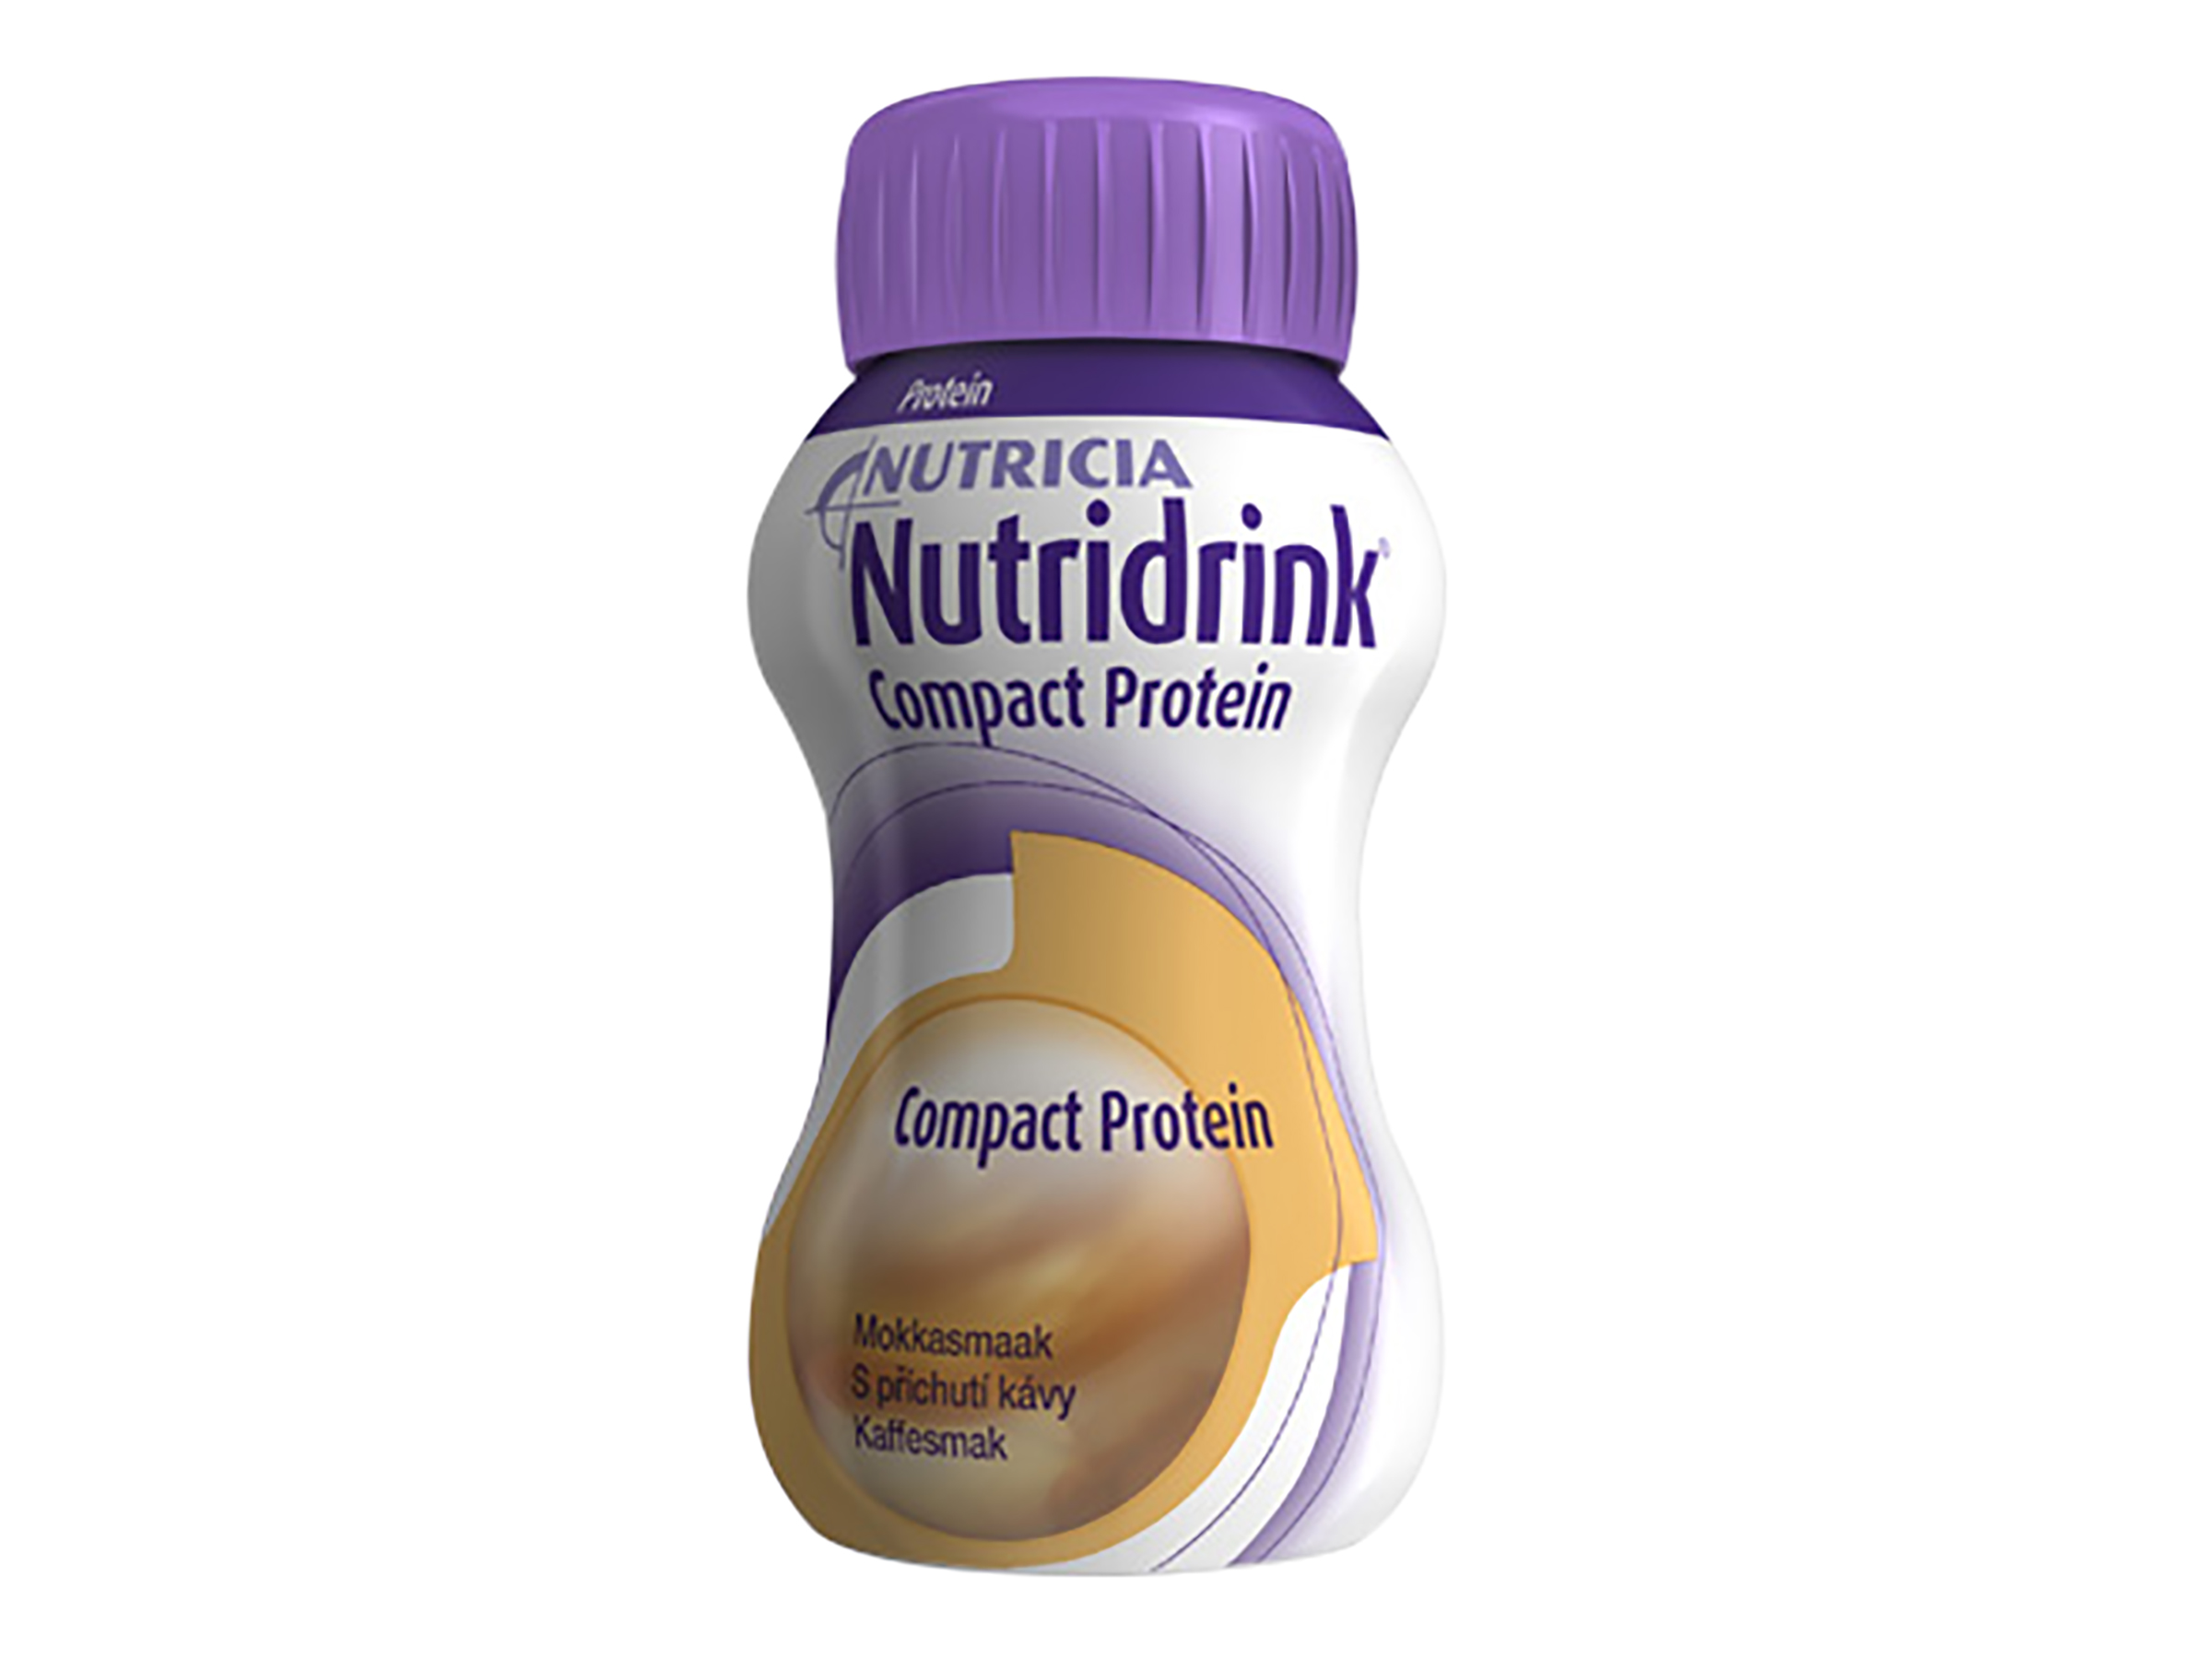 Nutridrink Compact proteinrik næringsdrikk, Kaffe, 4 x 125 ml